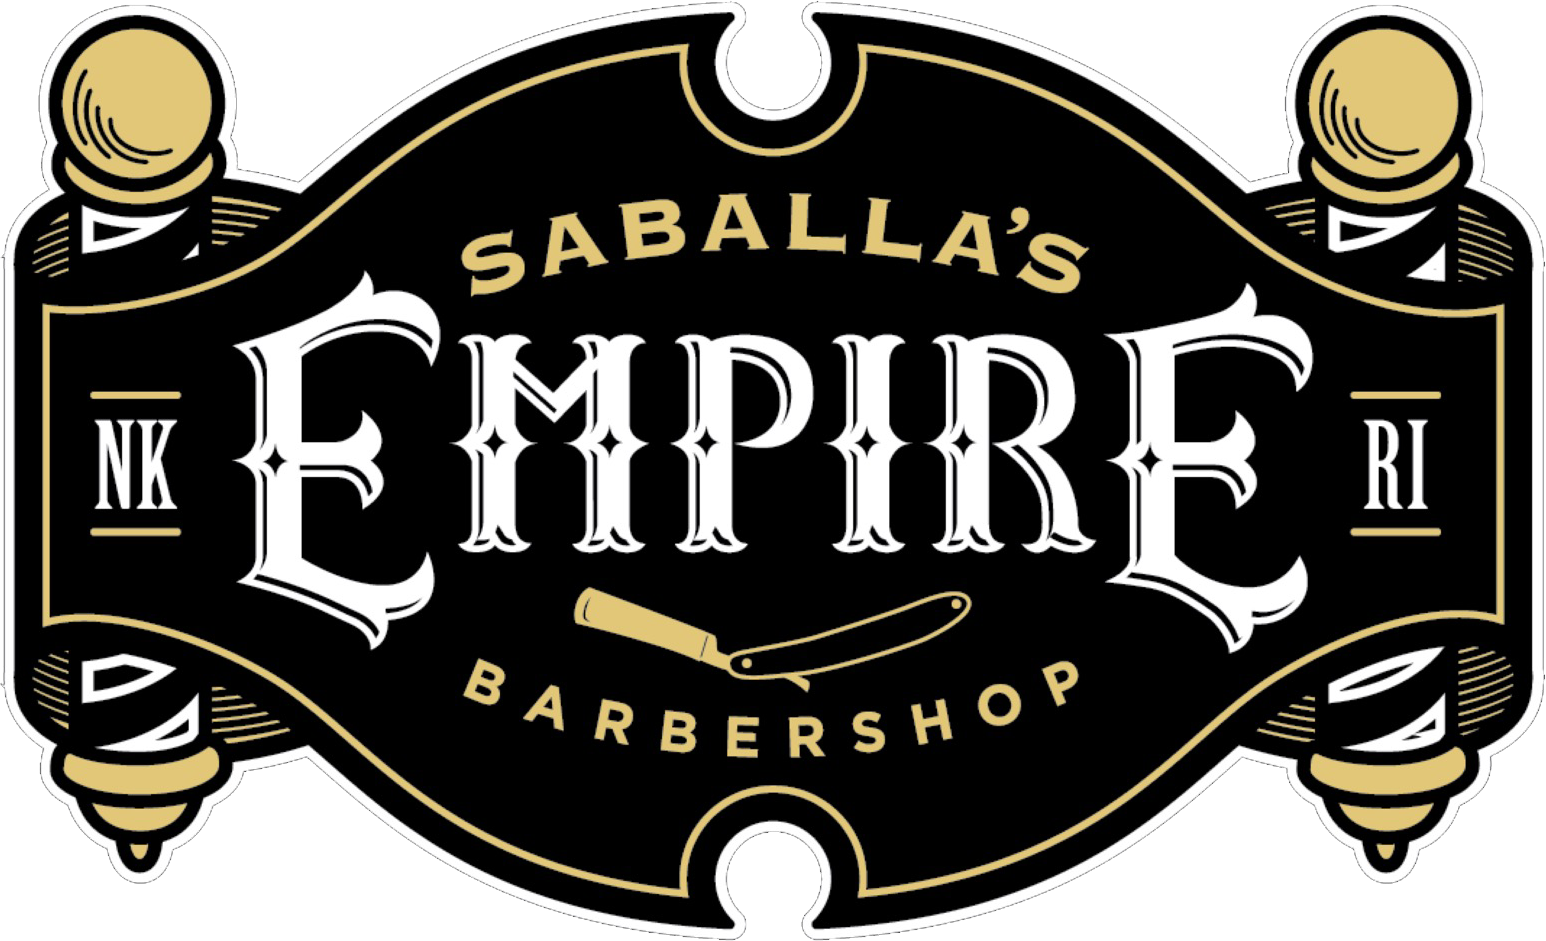 Saballas Empire Barbershop